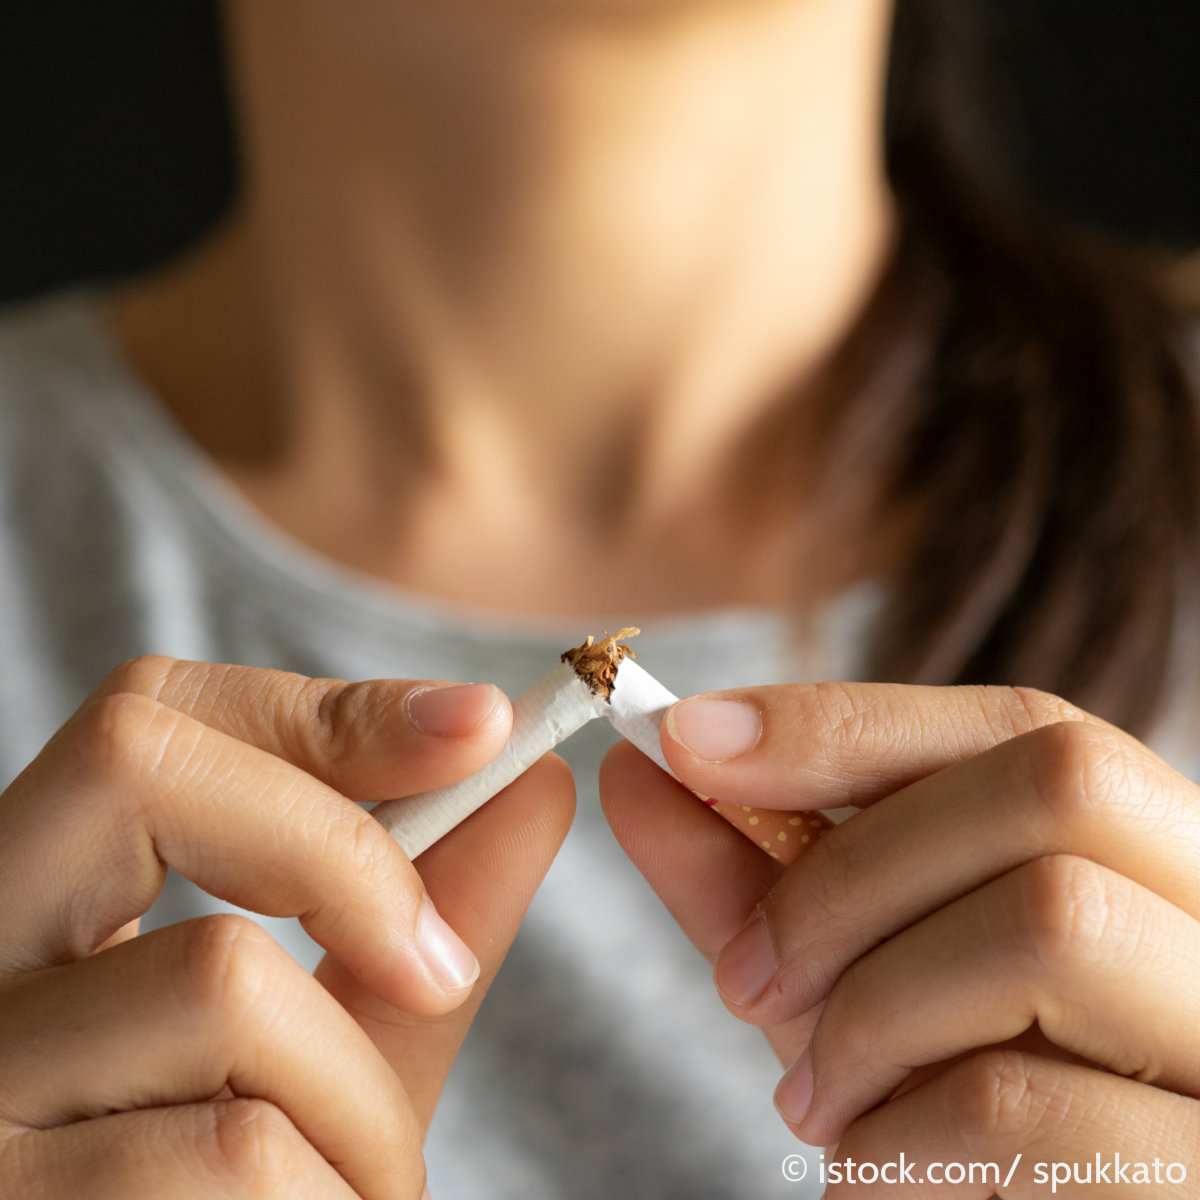 Nikotinpflaster nicht länger als drei Monate verwenden